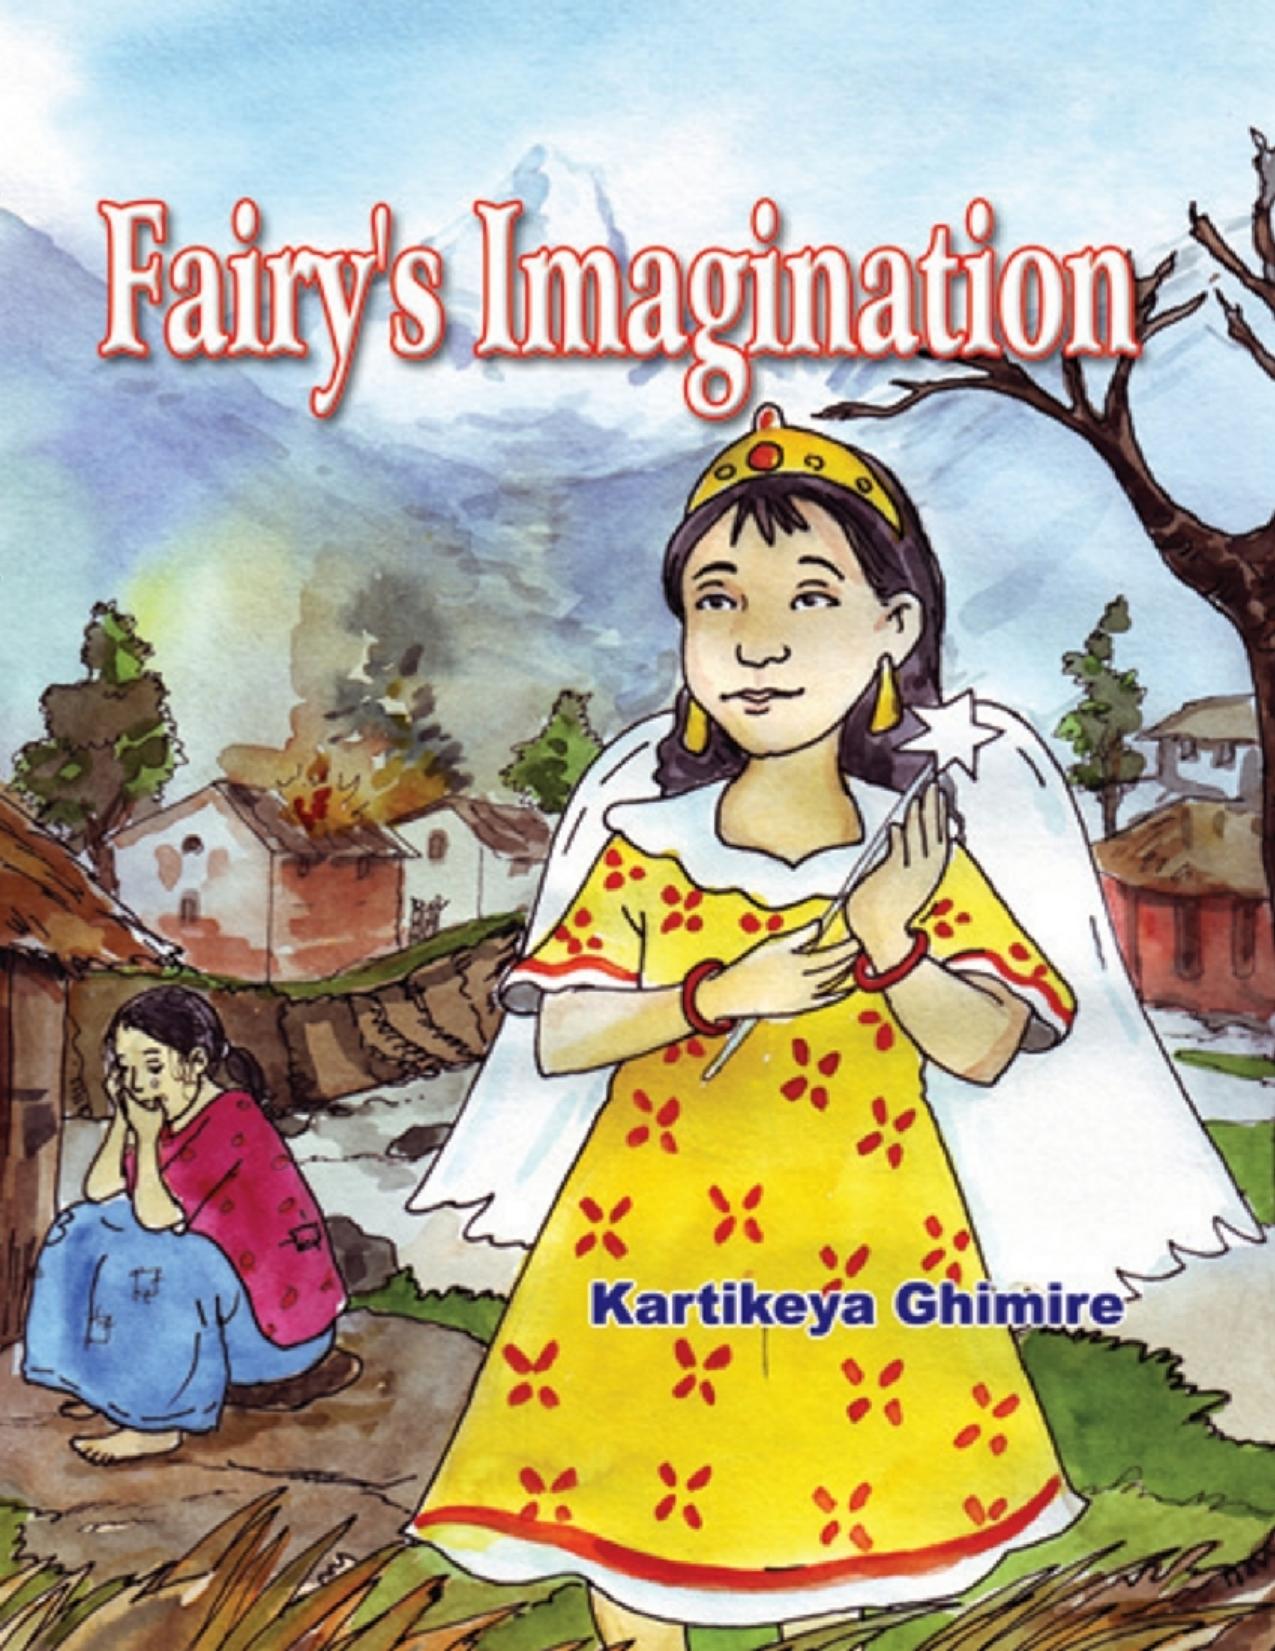 Fairys Imagination